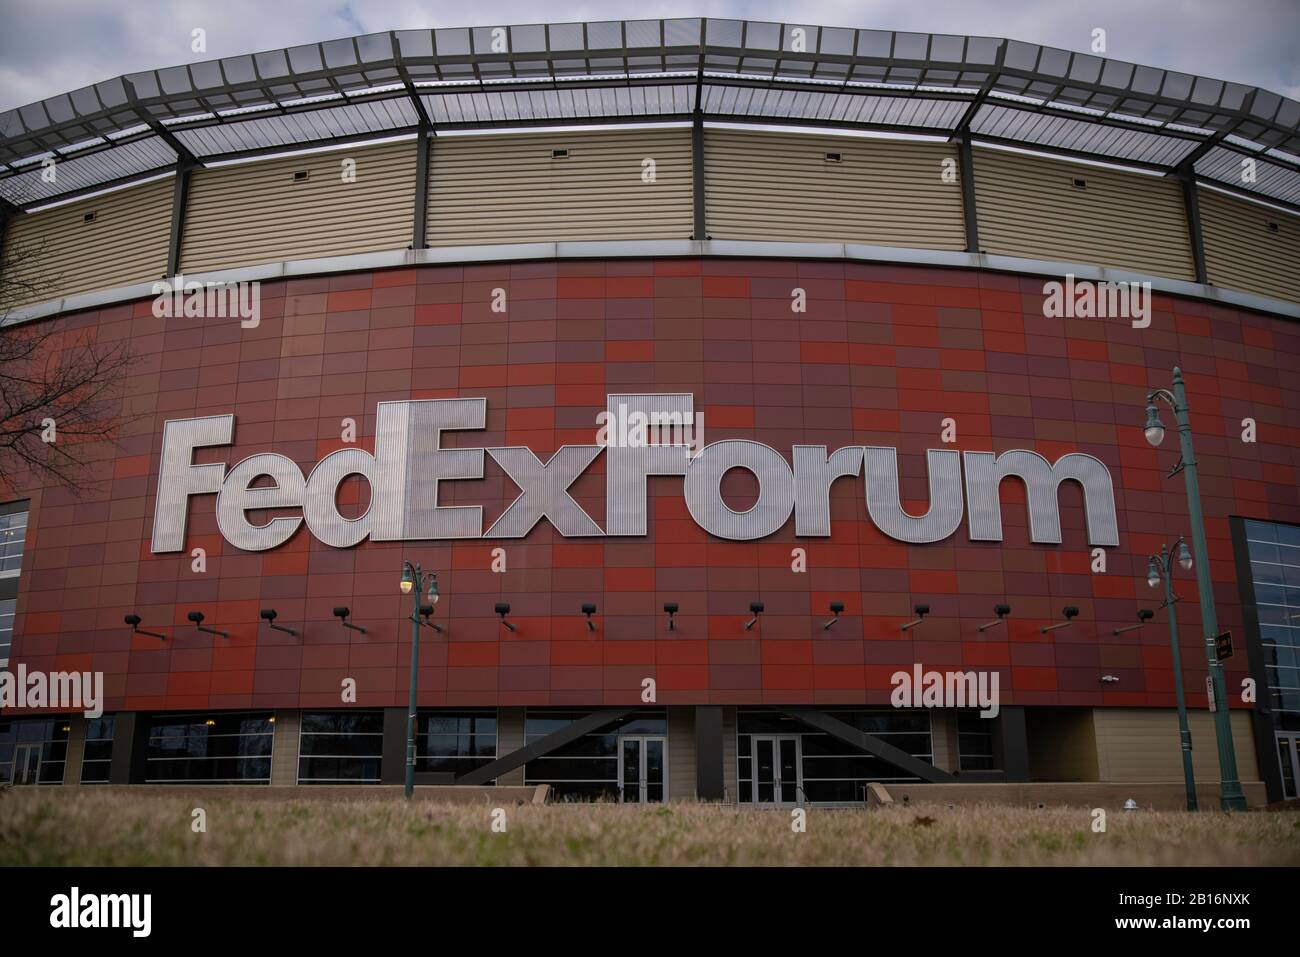 Memphis, Tennessee - 27 janvier 2020 : arène FedExForum, stade des NBA Grizzlies et U of M Tigers NCAA basketball Banque D'Images